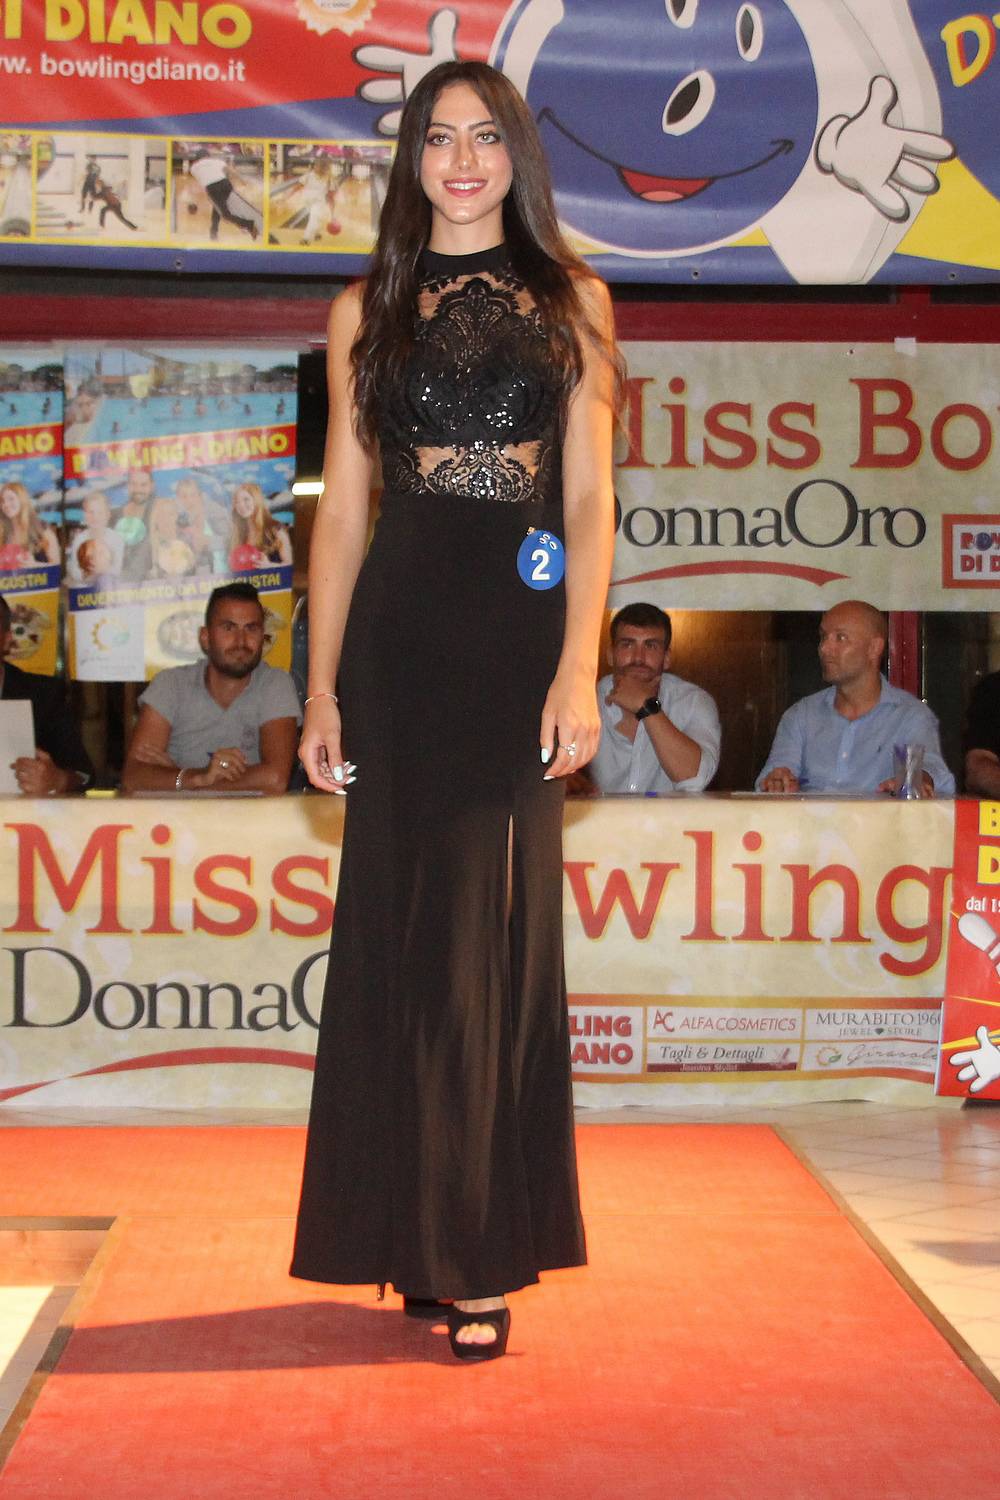 La 17enne Cuneese Elisabetta Rodà vince Miss Bowling Donnaoro